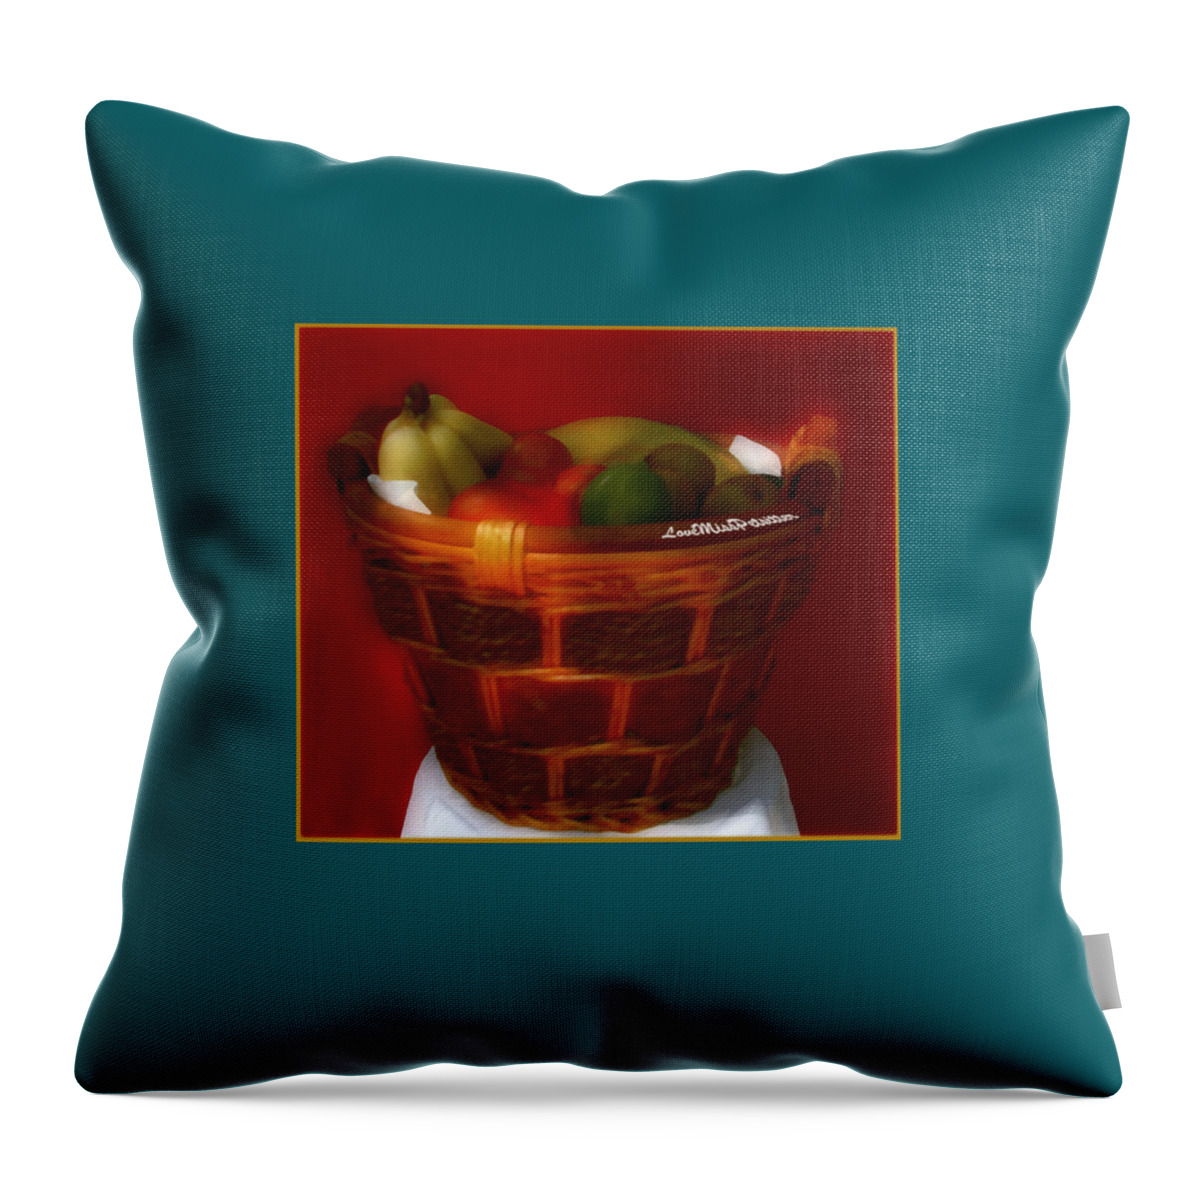 Art Throw Pillow featuring the digital art Fruit Art 33 by Miss Pet Sitter